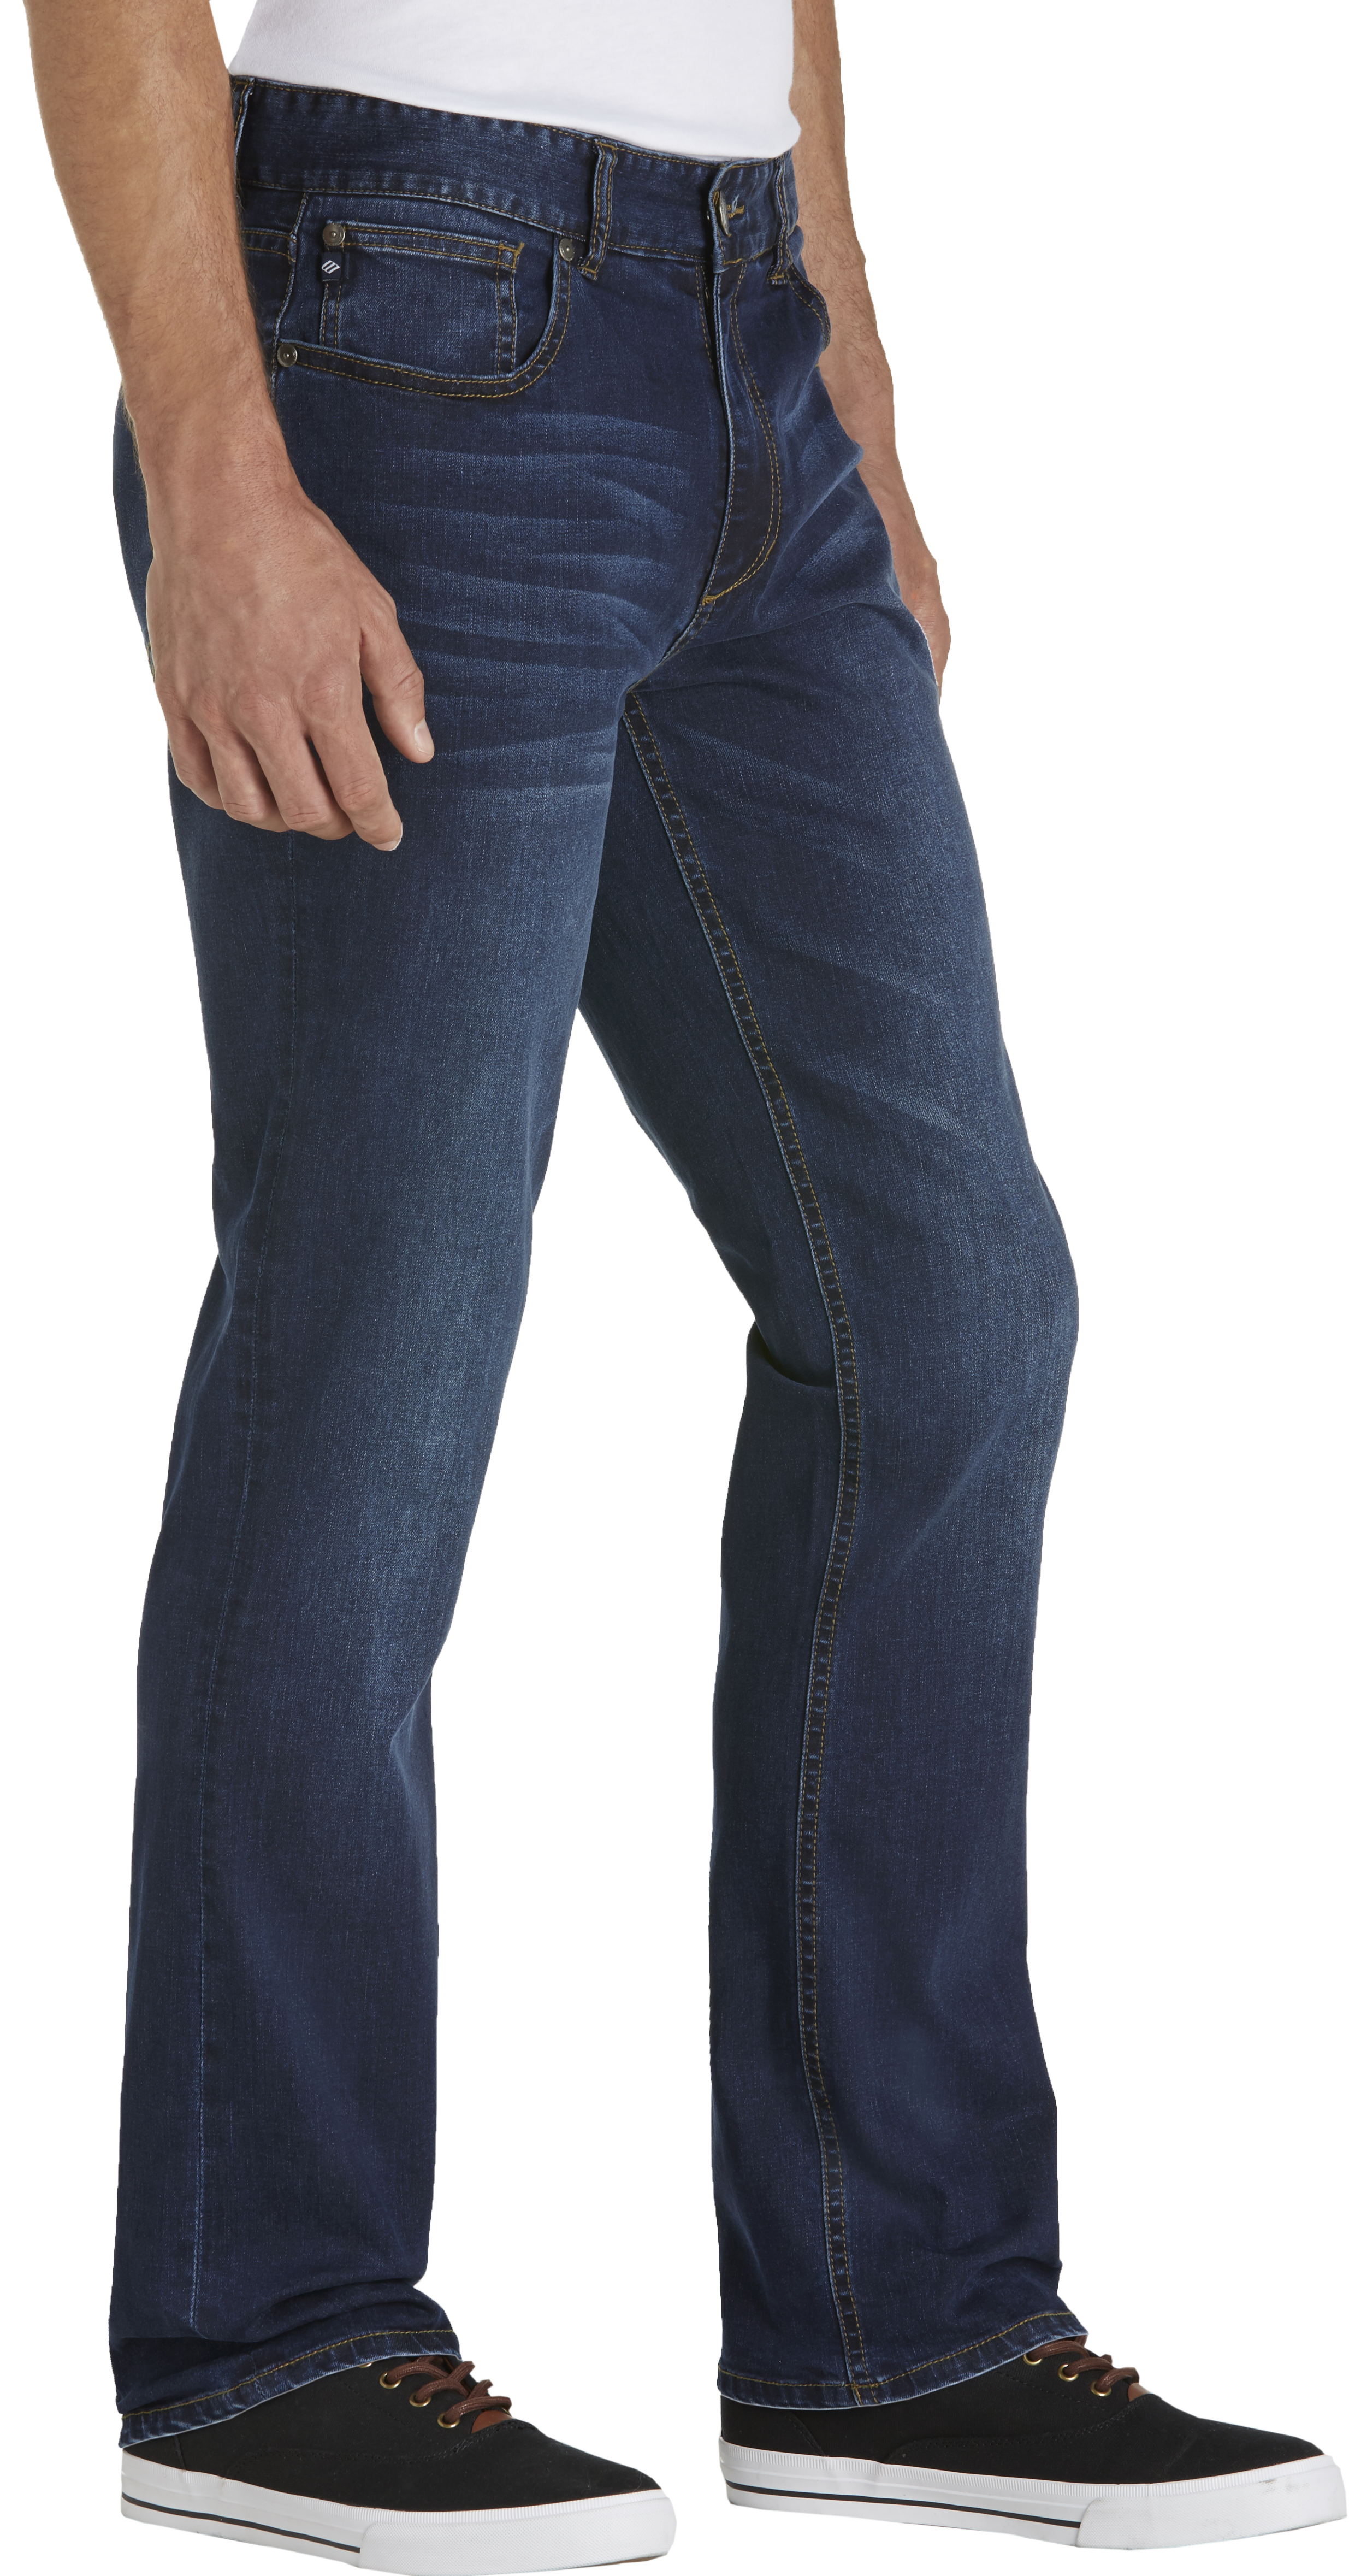 Joseph Abboud Indigo Blue Rinse Slim Fit Jeans - Men's Sale | Men's ...